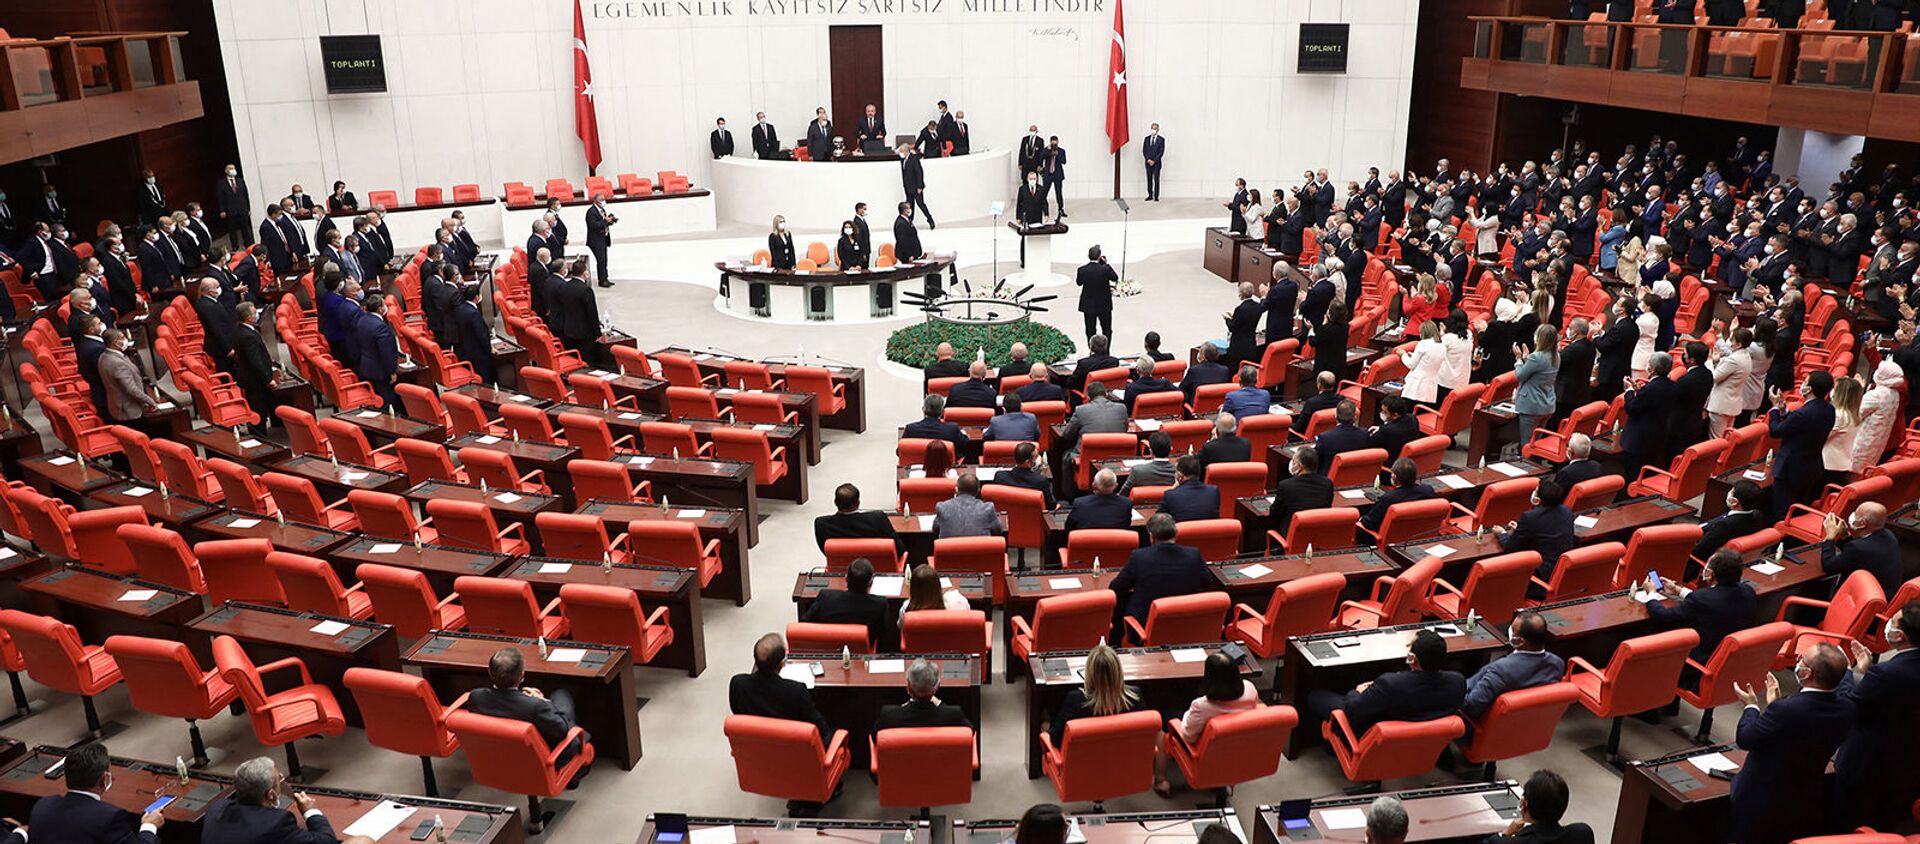 Заседание четвертой законодательной сессии турецкого парламента (1 октября 2020). Анкара - Sputnik Արմենիա, 1920, 13.03.2021